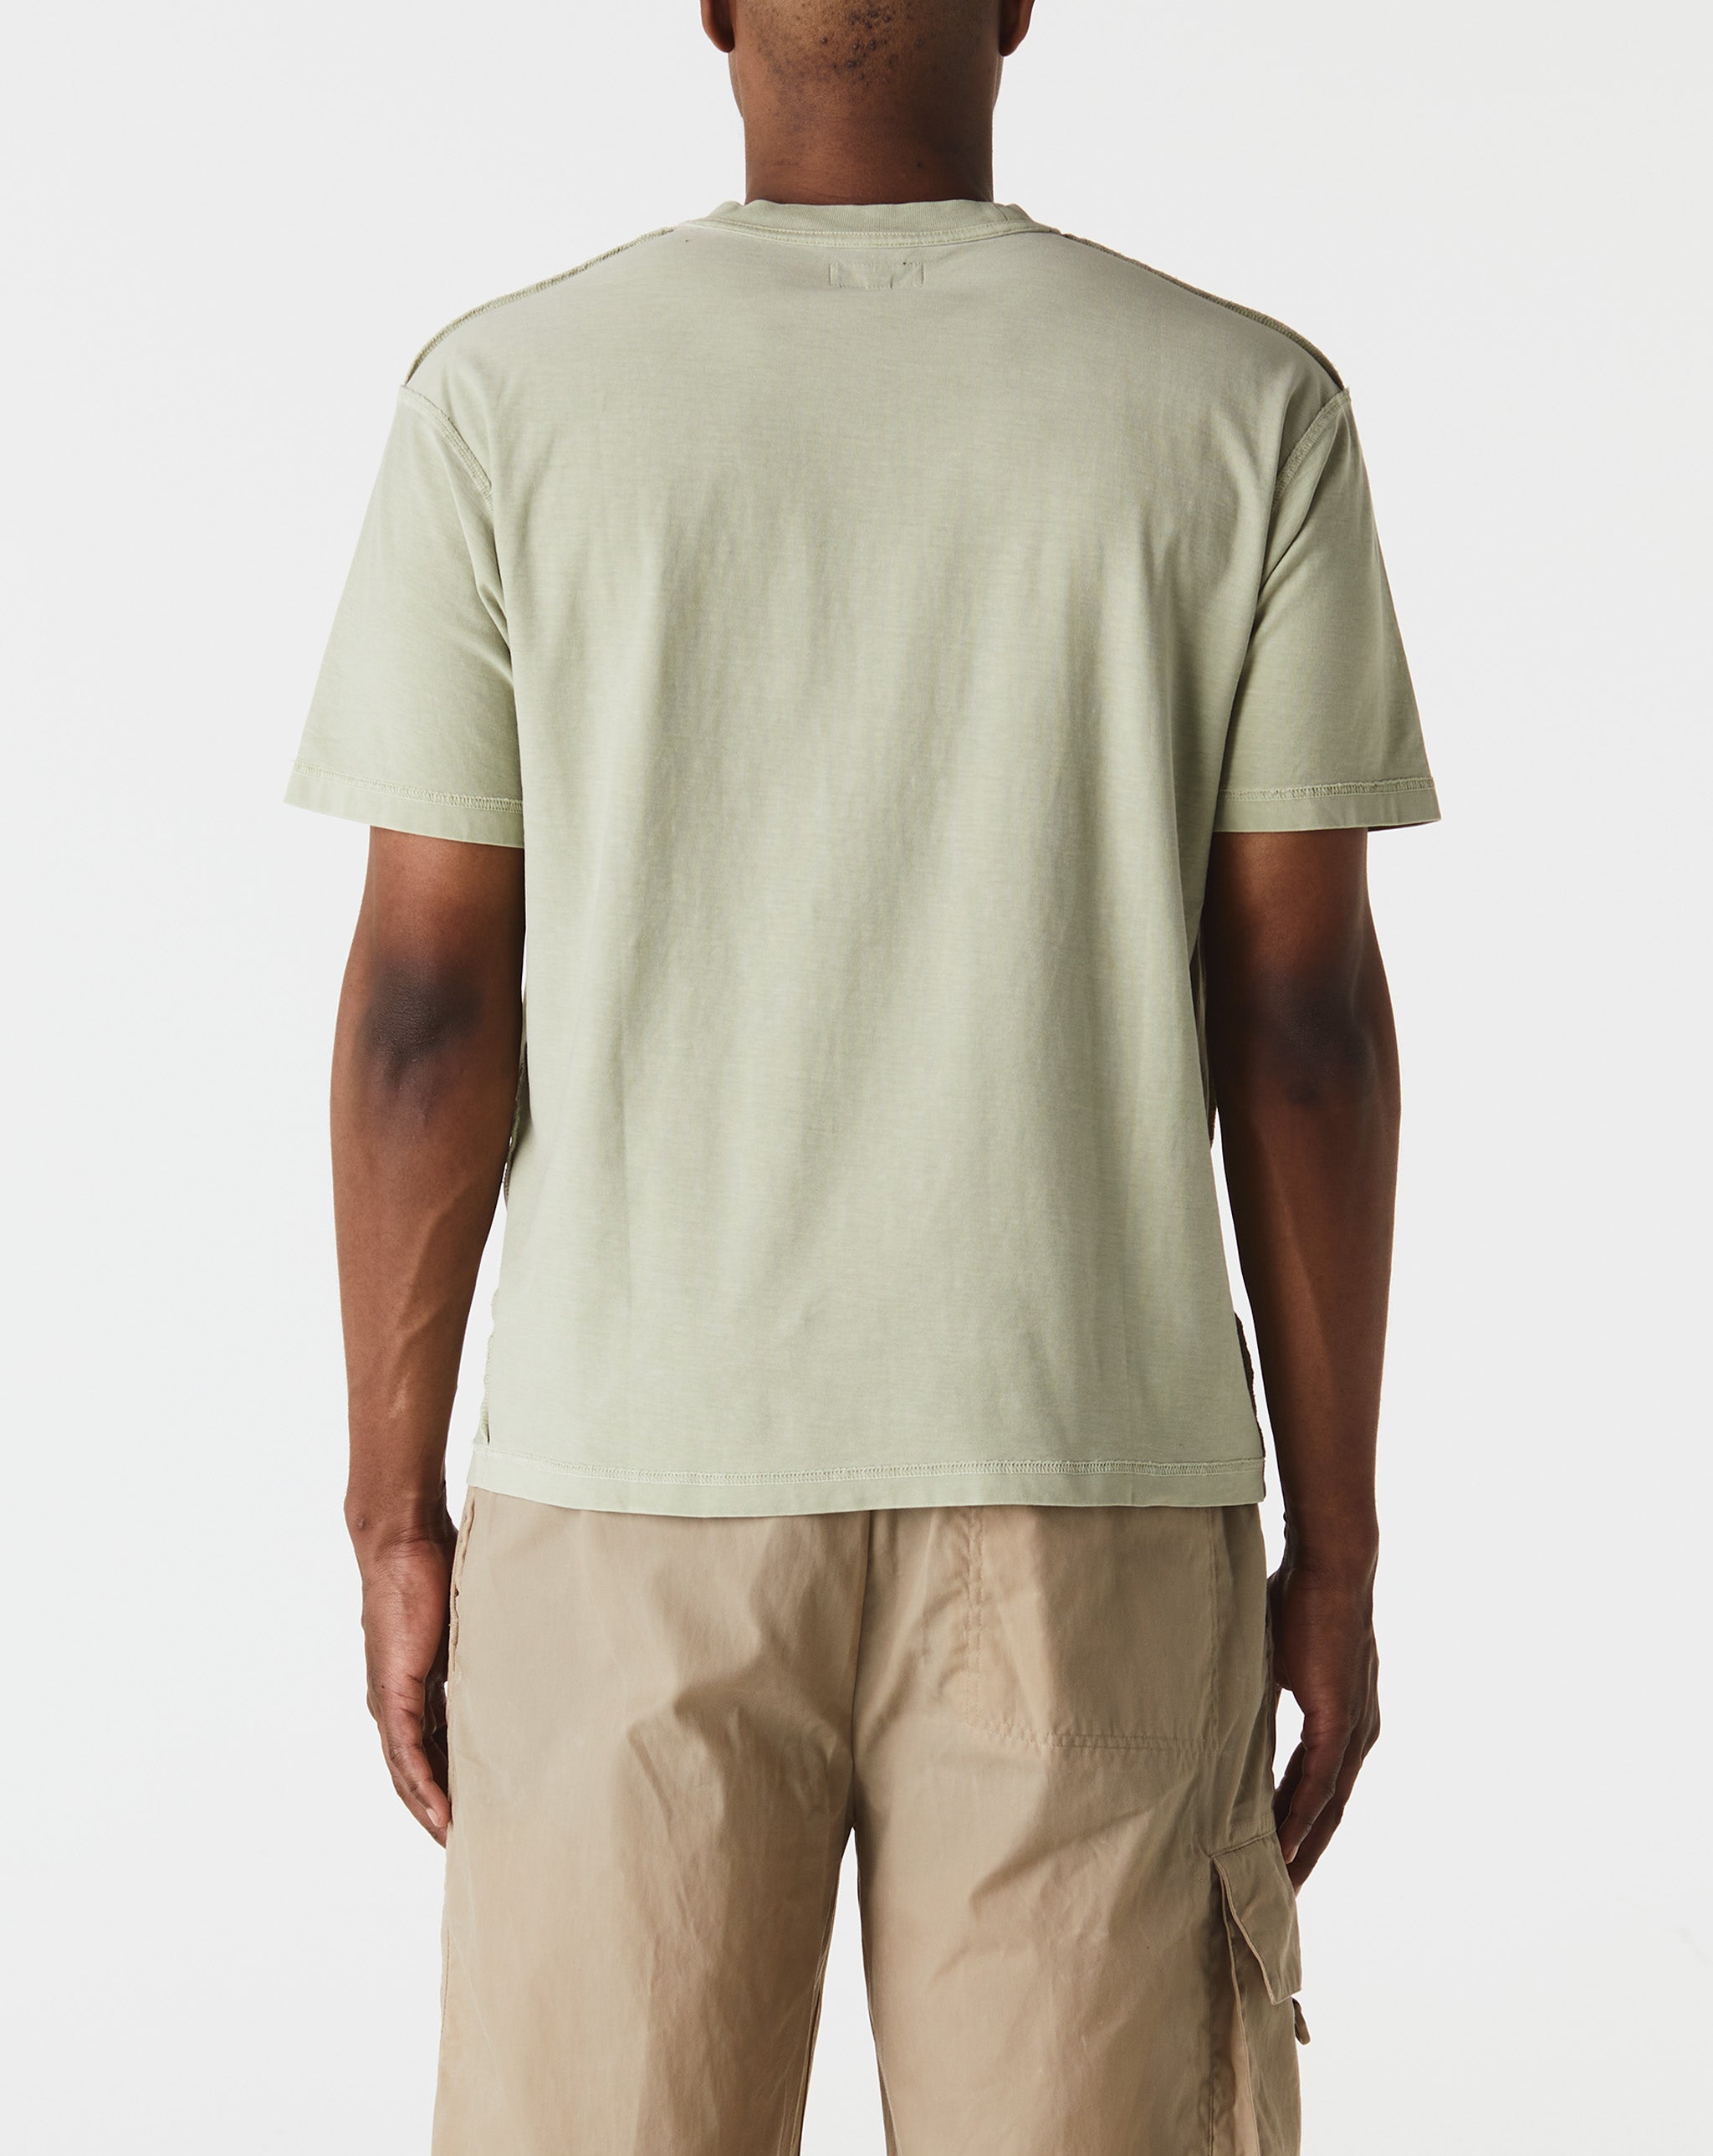 Stüssy Lazy T-Shirt  - Cheap Urlfreeze Jordan outlet